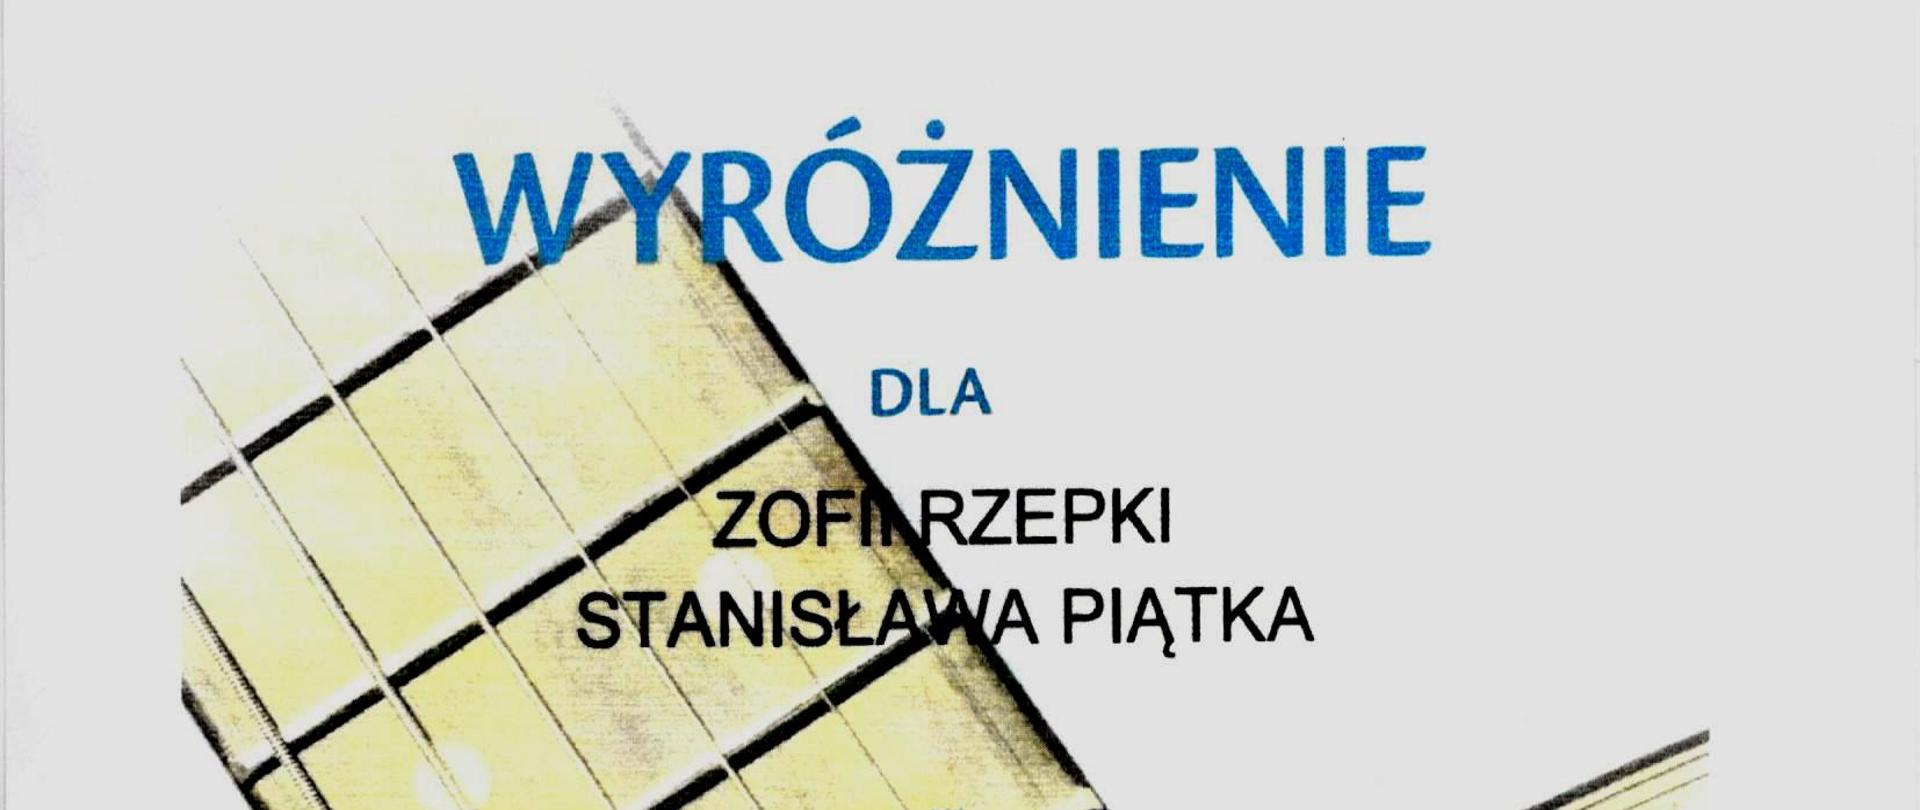 Dyplom - Wyróżnienie dla Zofii Rzepki i Stanisława Piątka z klasy gitary